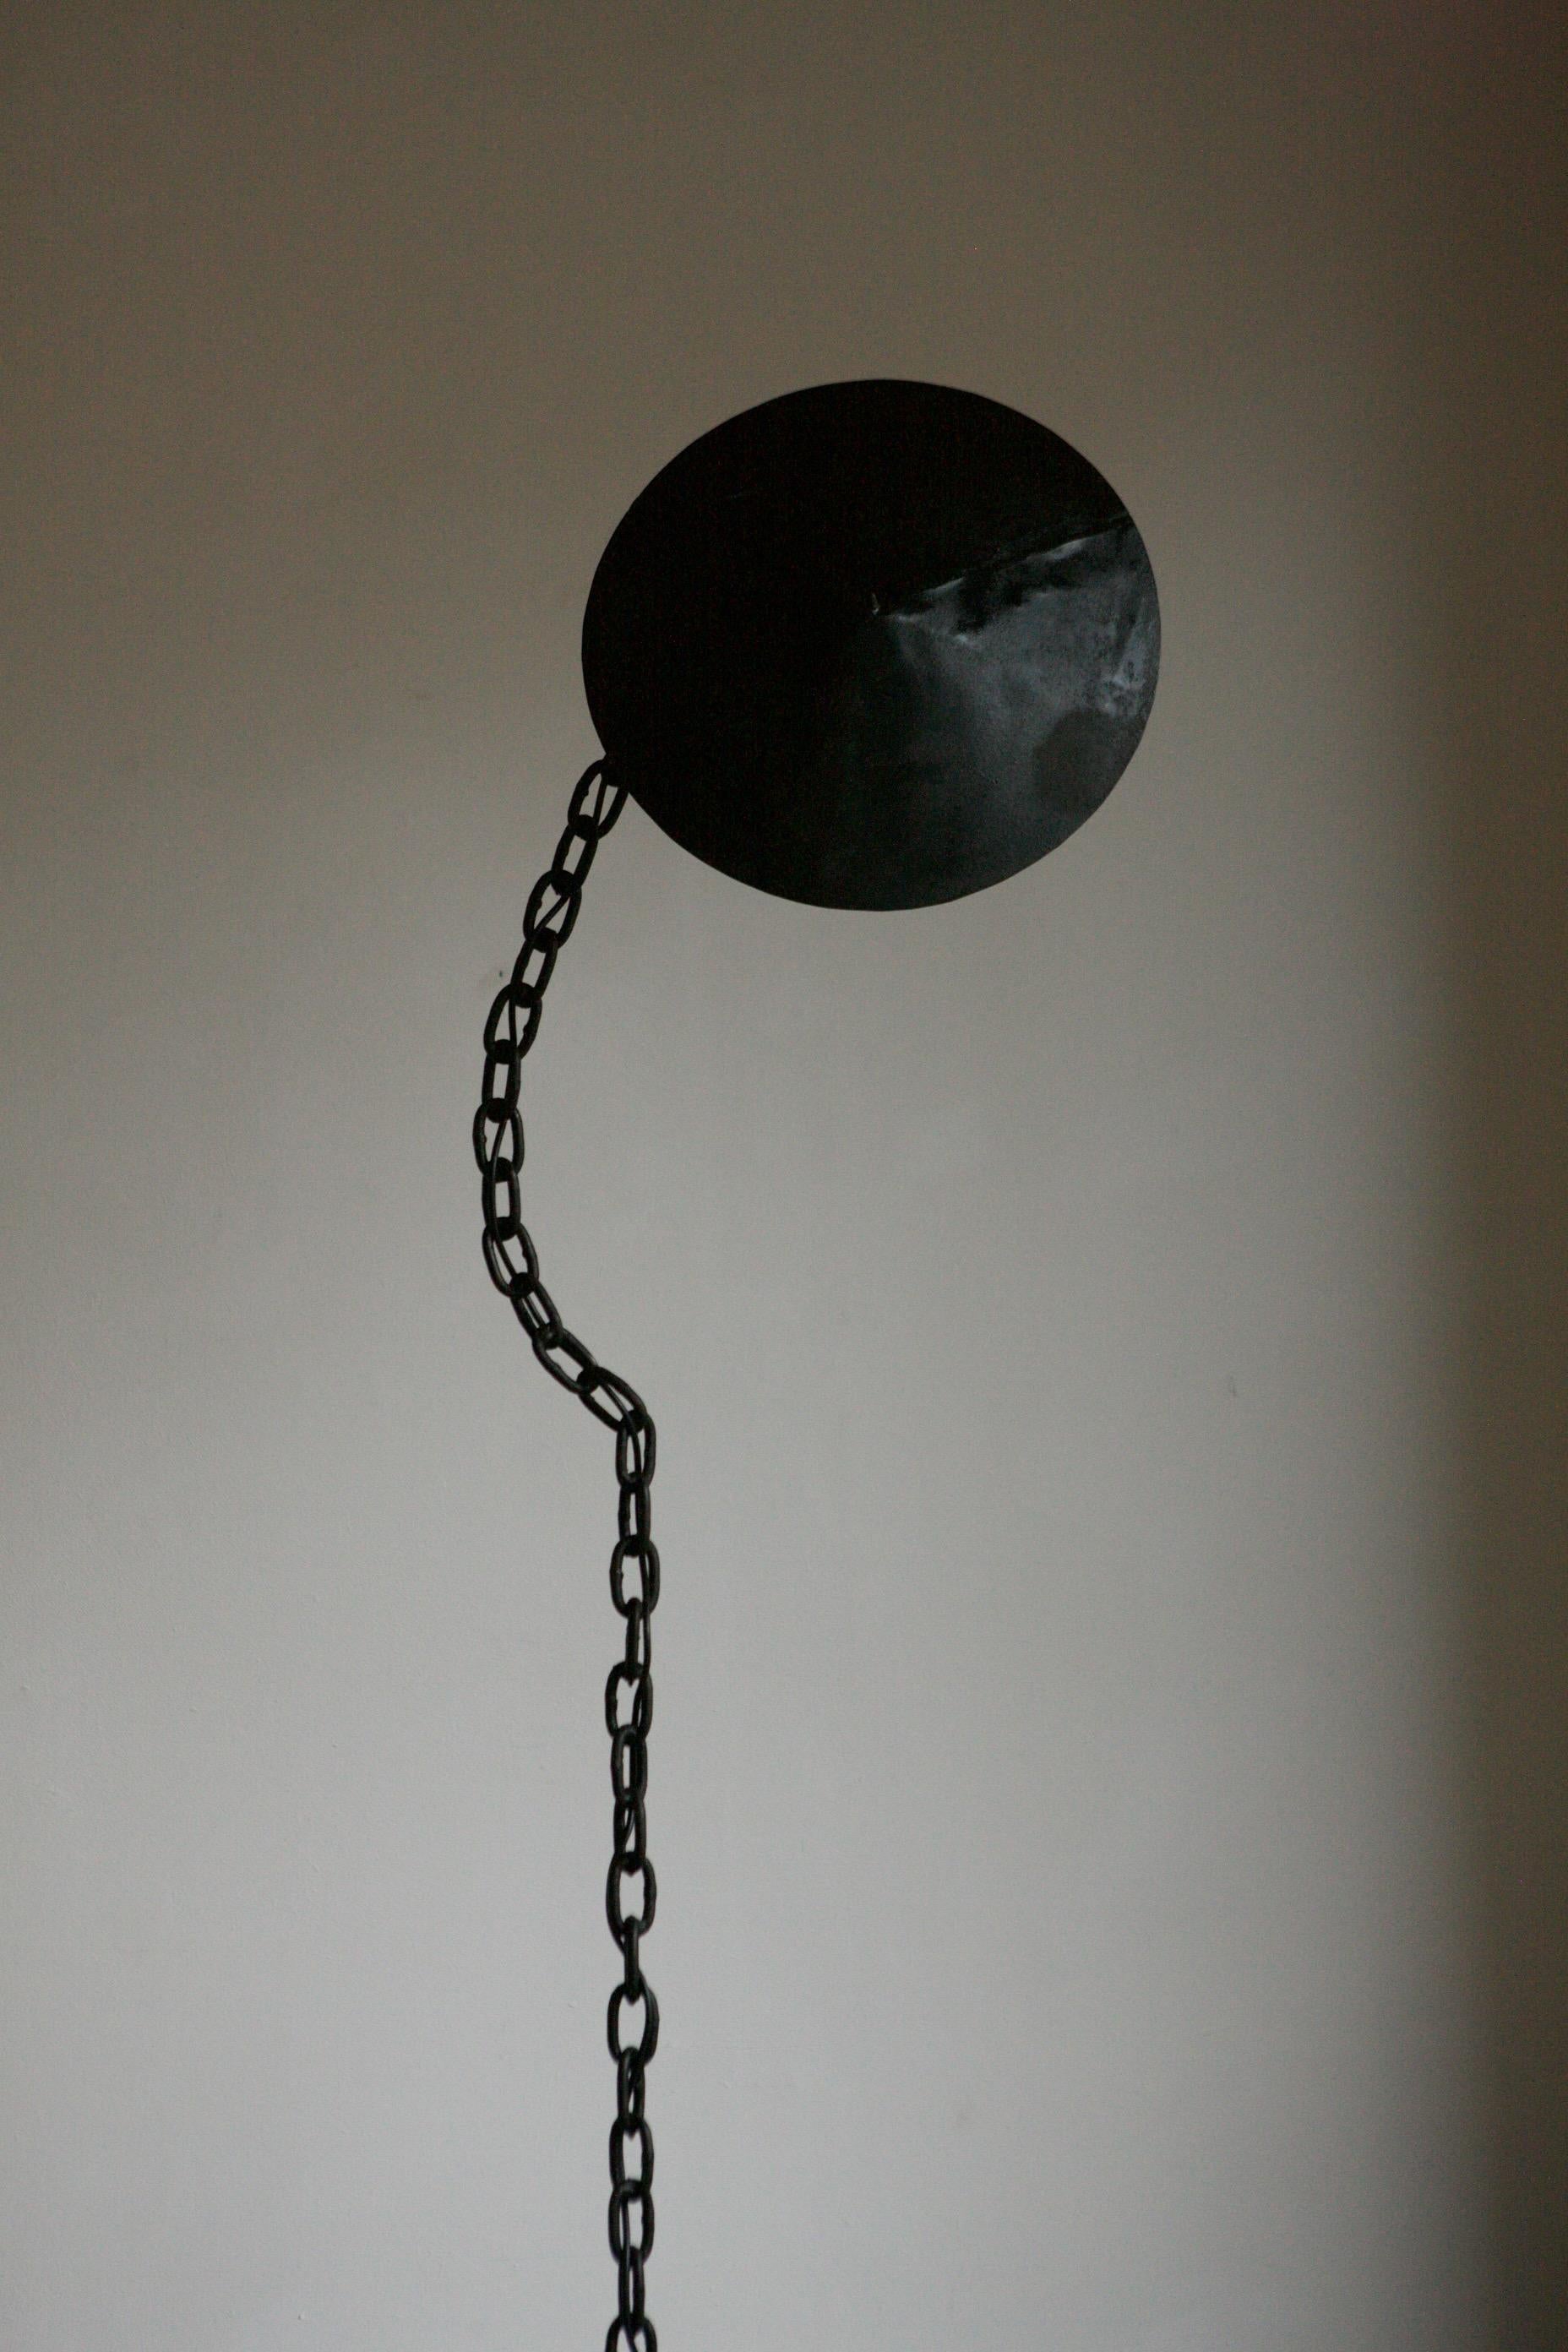 Lampadaire à chaîne noir avec un abat-jour en forme de cône qui protège la douille de l'ampoule. La tige de la chaîne est soudée dans une forme fluide pour donner l'illusion d'une chaîne suspendue.
